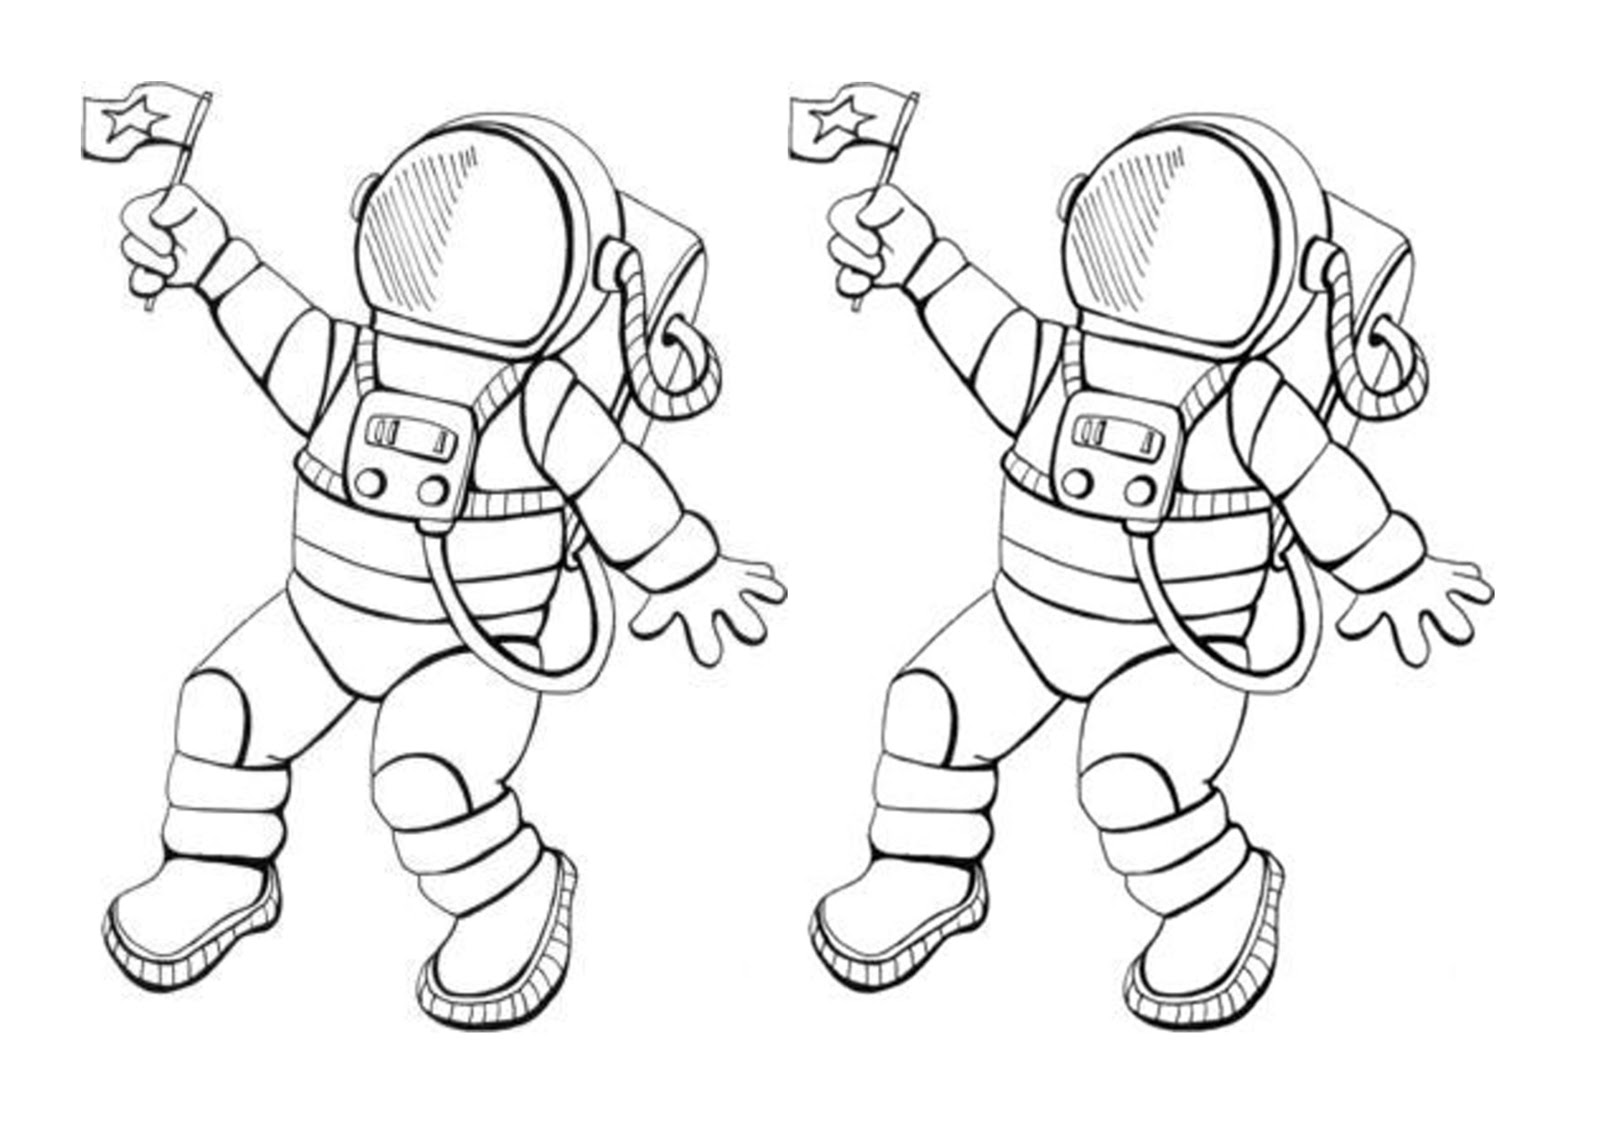 Шаблон космонавта для поделки ко дню космонавтики